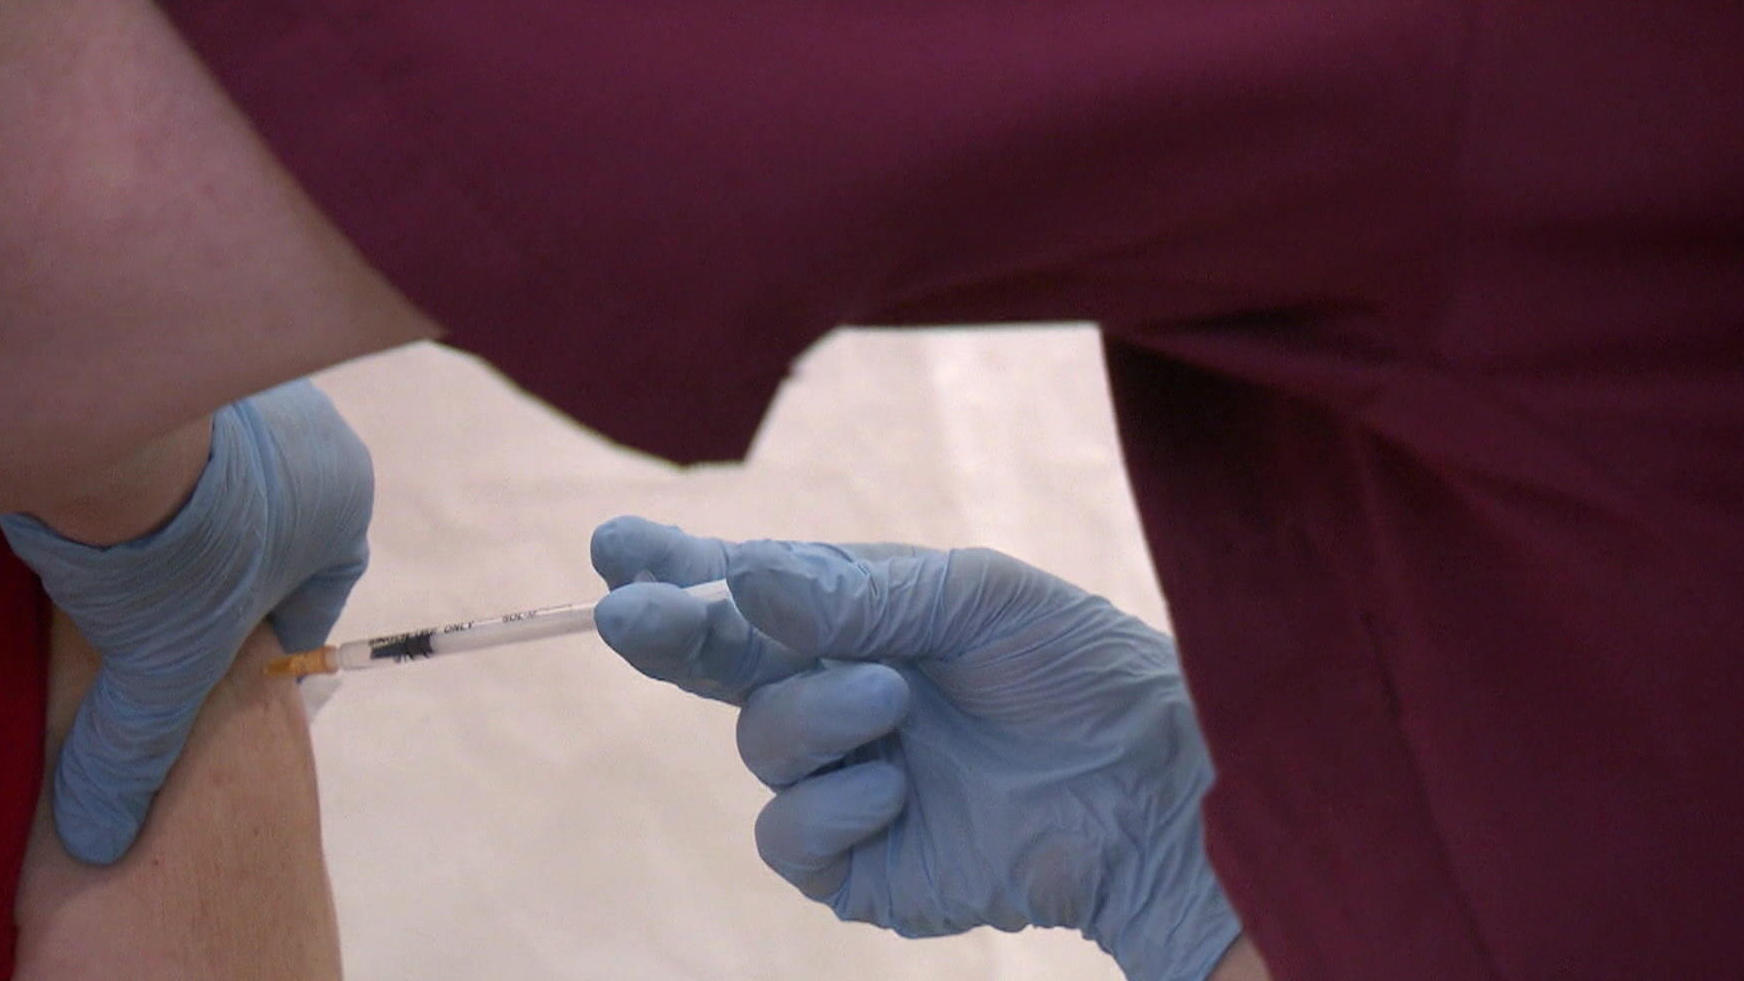 Rezidive sollen in Zukunft der Vergangenheit angehören Revolutionäre Krebsimpfung